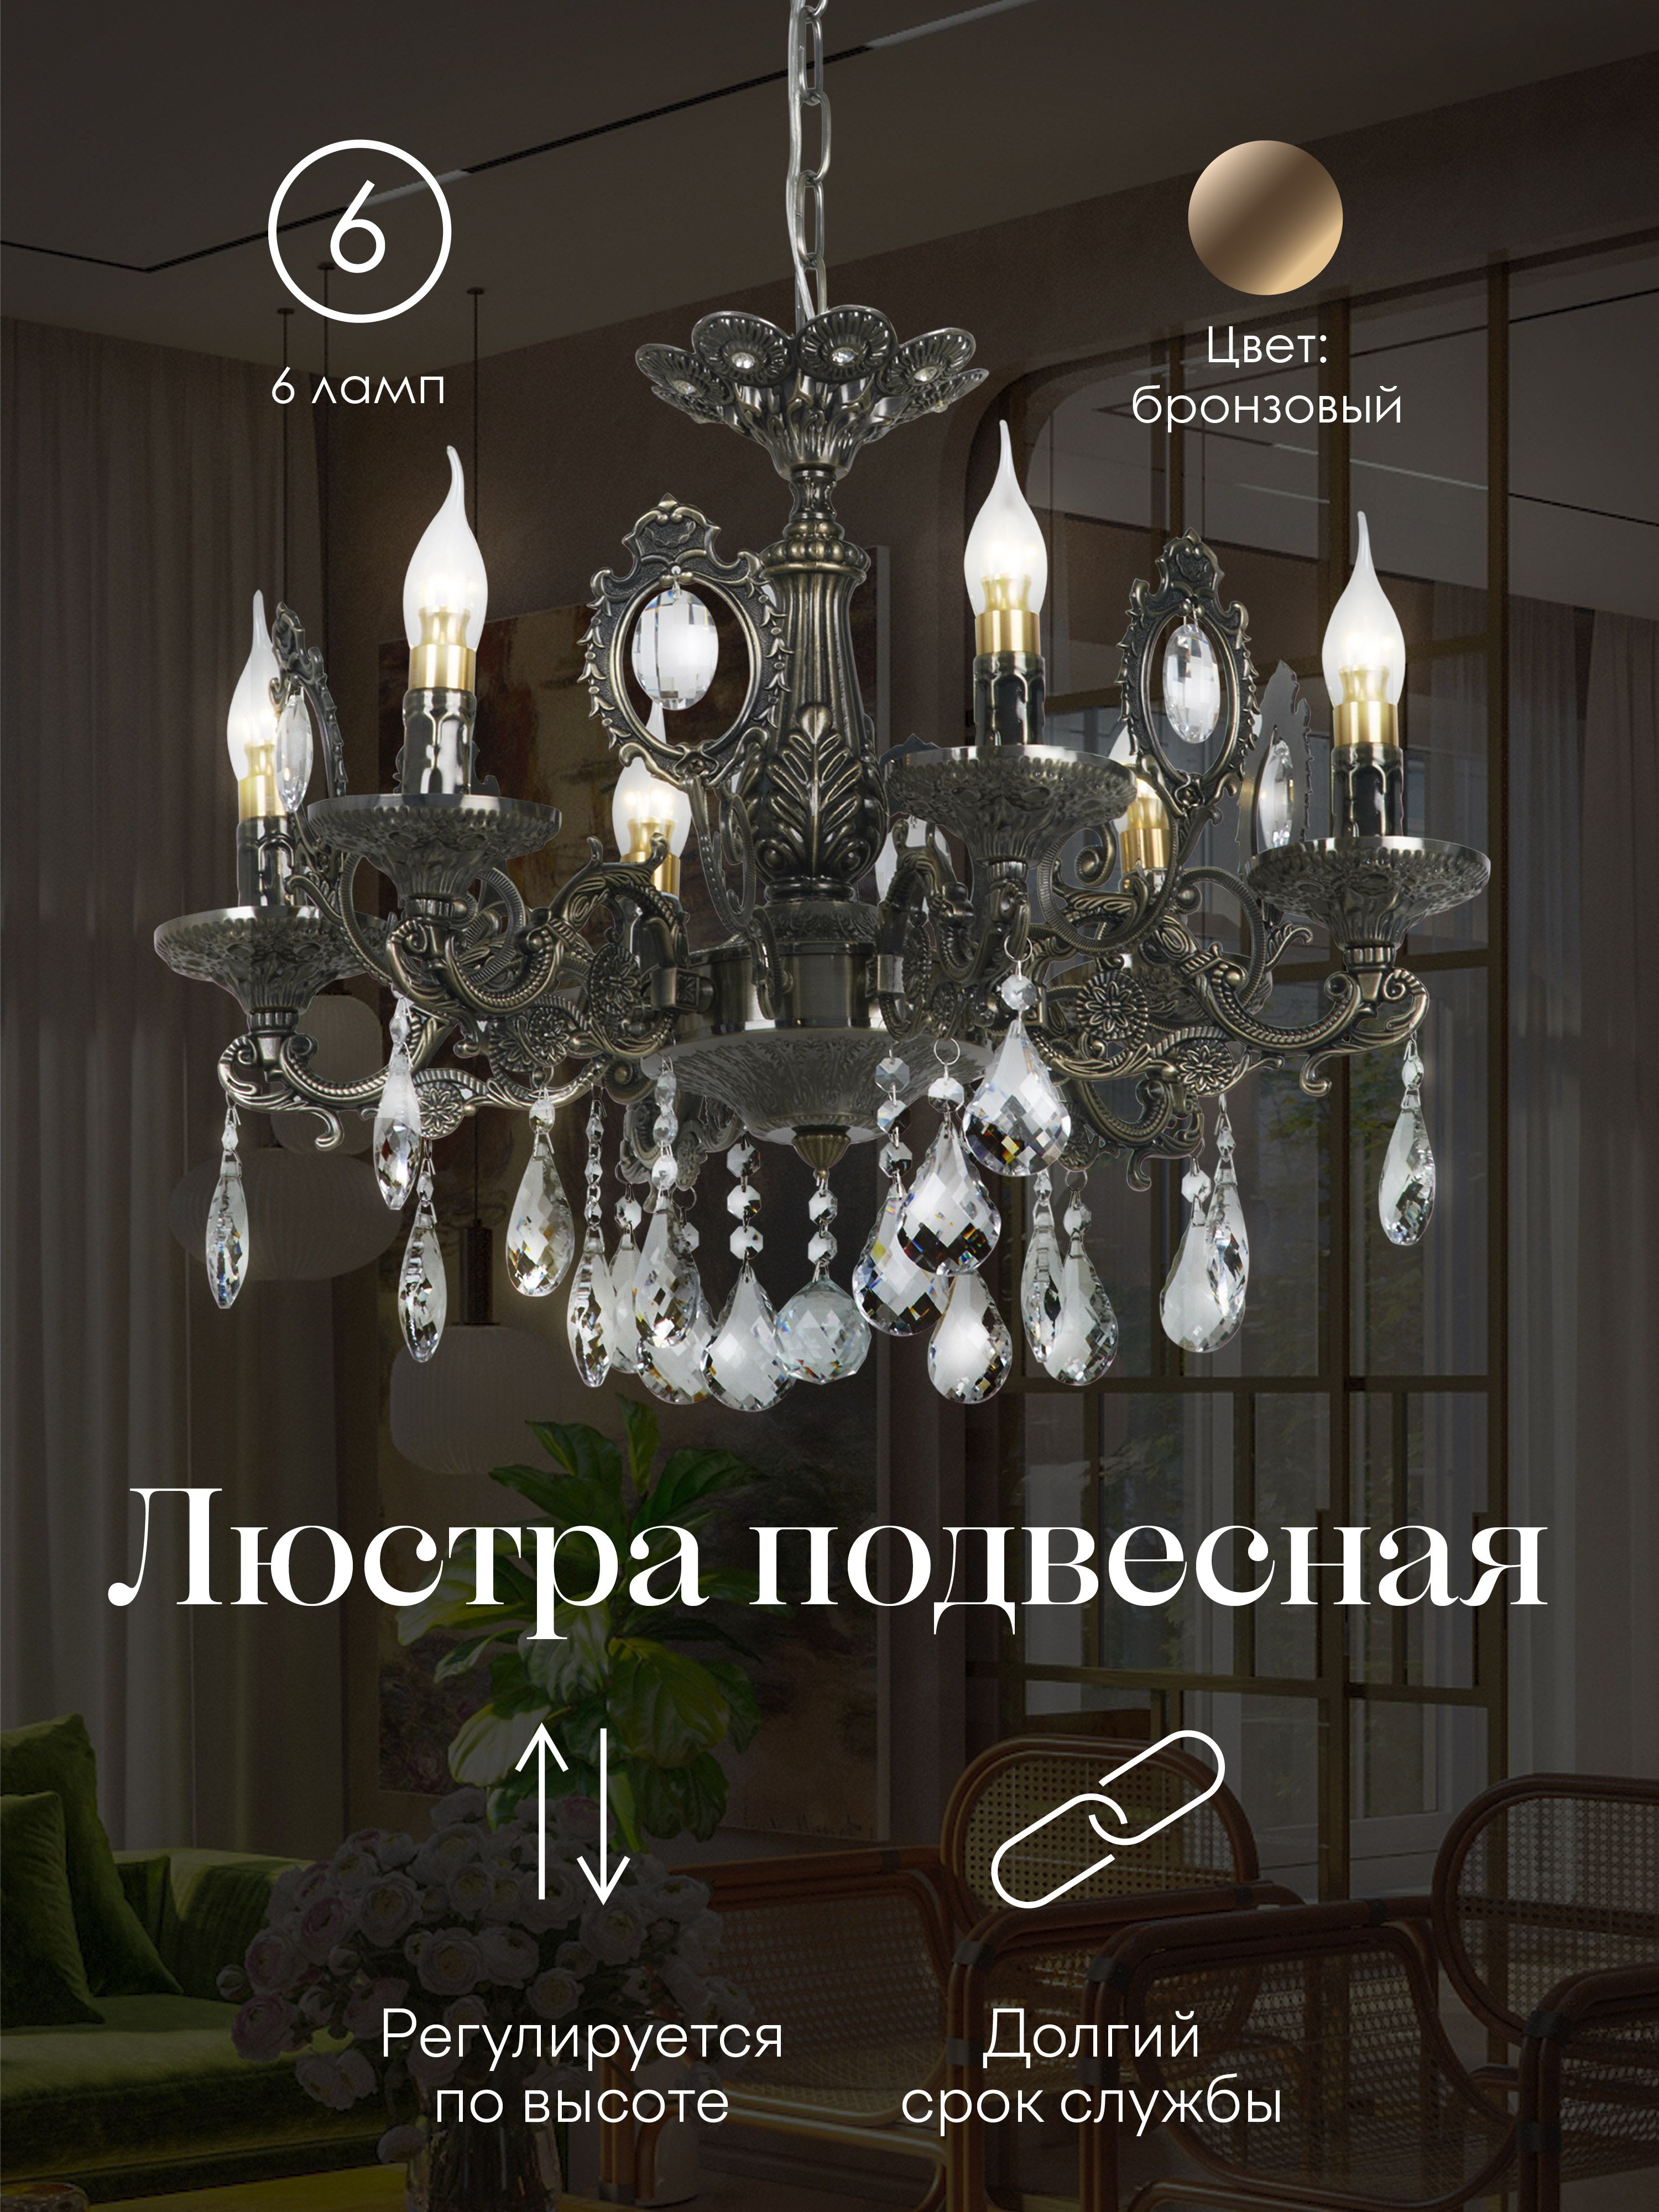 Интернет-магазин люстр и светильников в Москве | Купить люстру и светильники в интернете «ТопСвет»